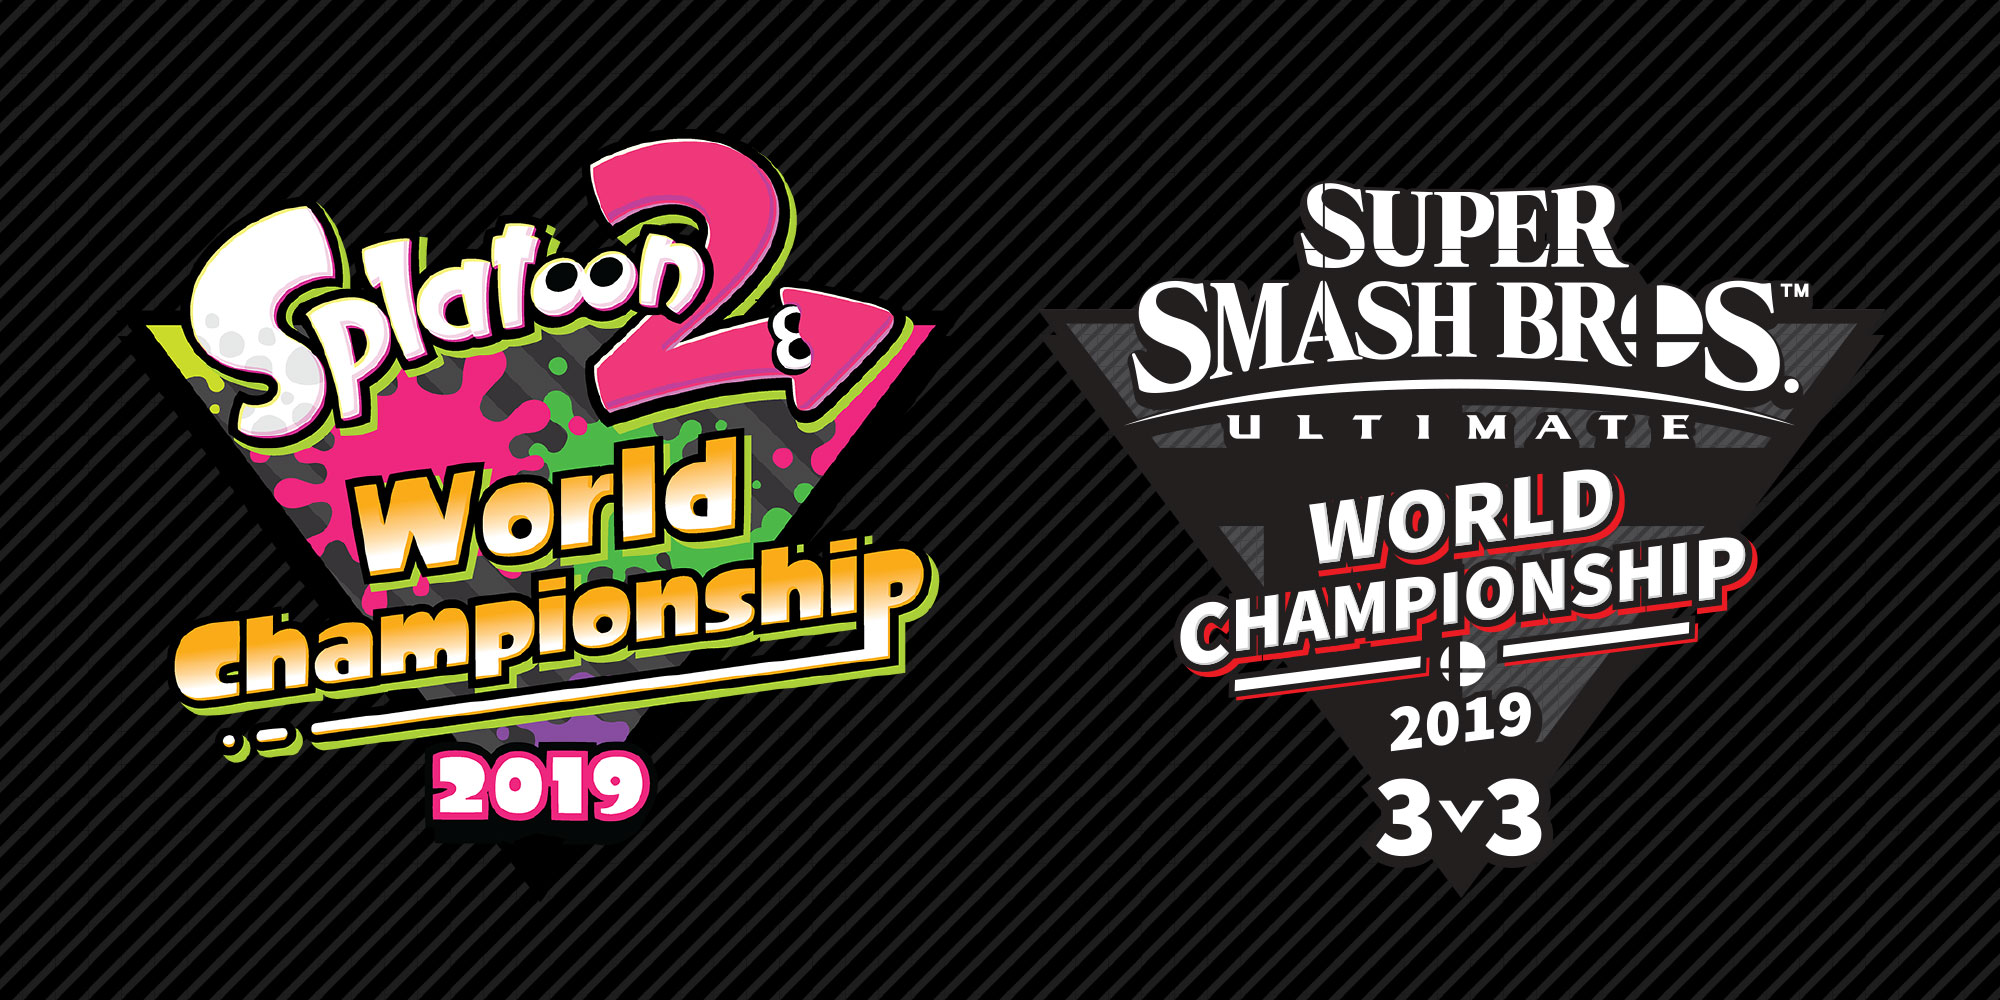 Descobre os vencedores dos campeonatos mundiais de Splatoon 2 e Super Smash Bros. Ultimate da E3 2019!